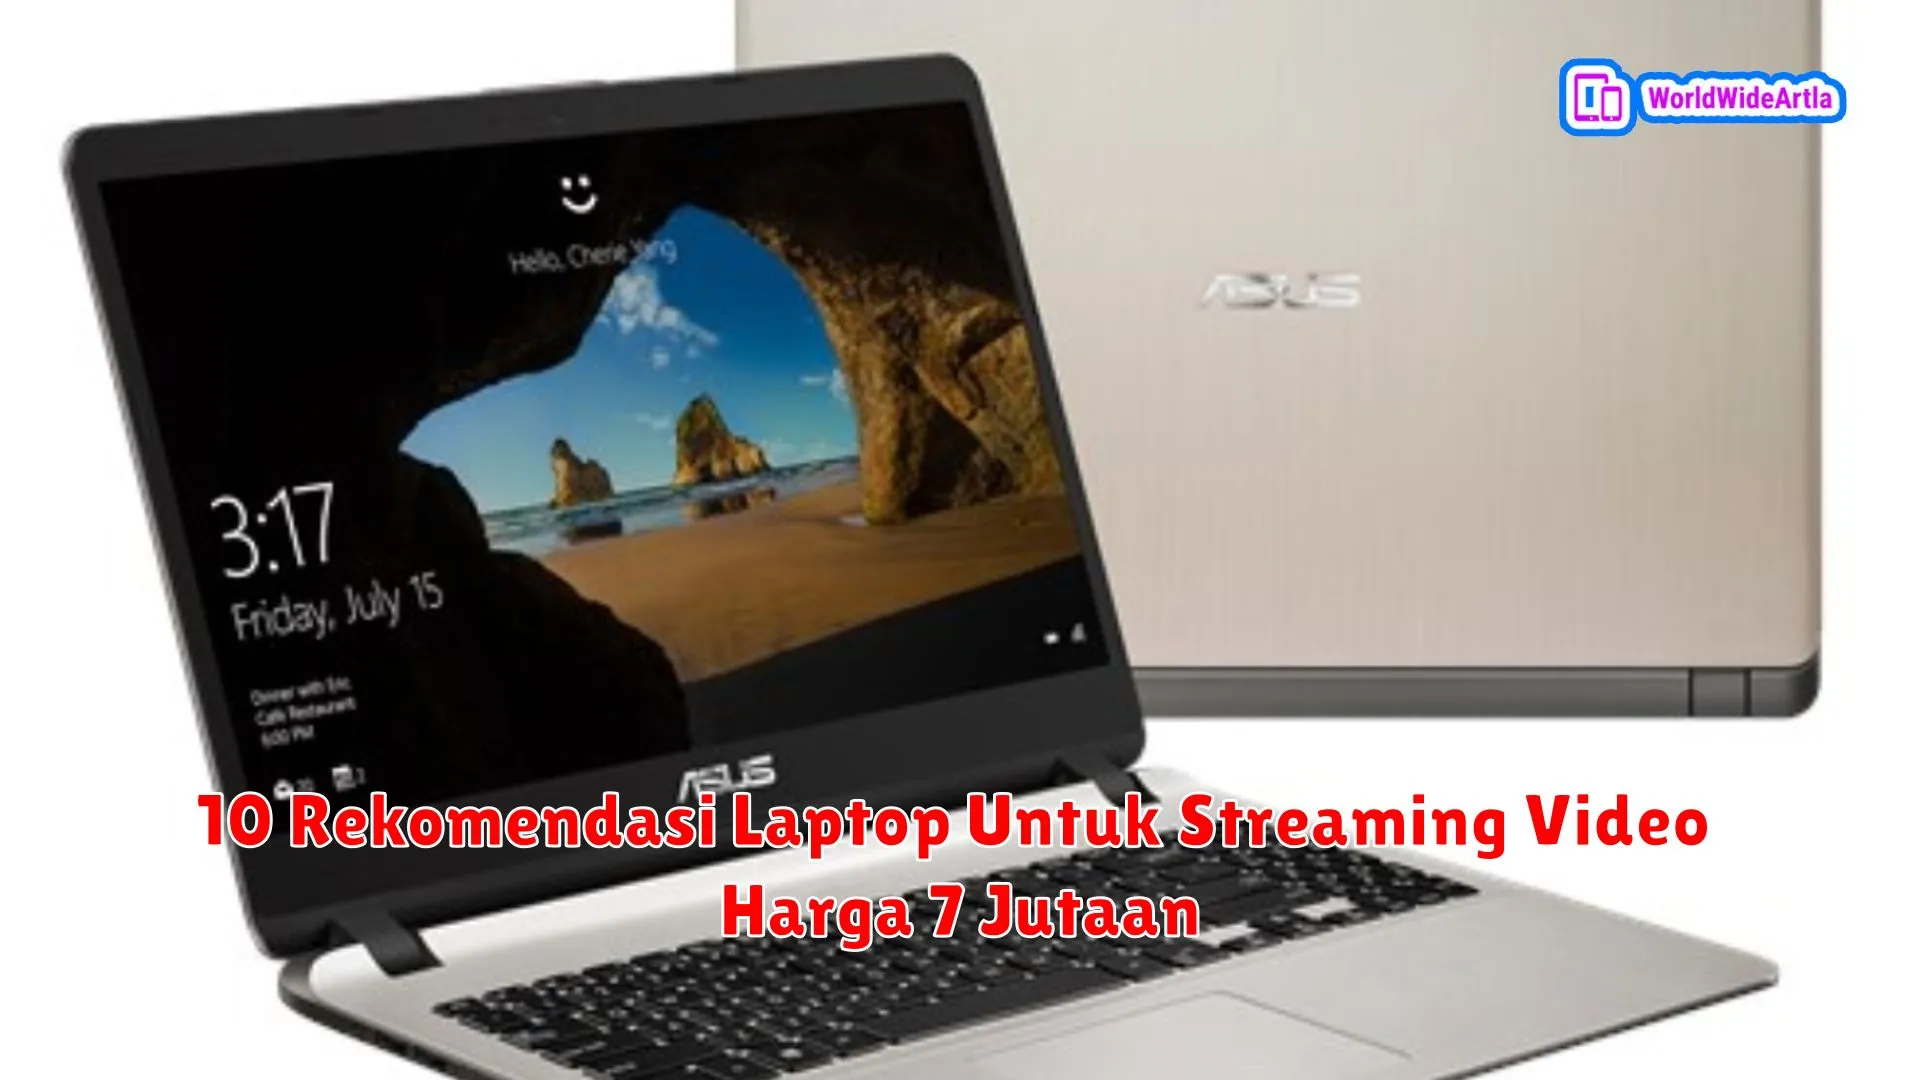 10 Rekomendasi Laptop Untuk Streaming Video Harga 7 Jutaan